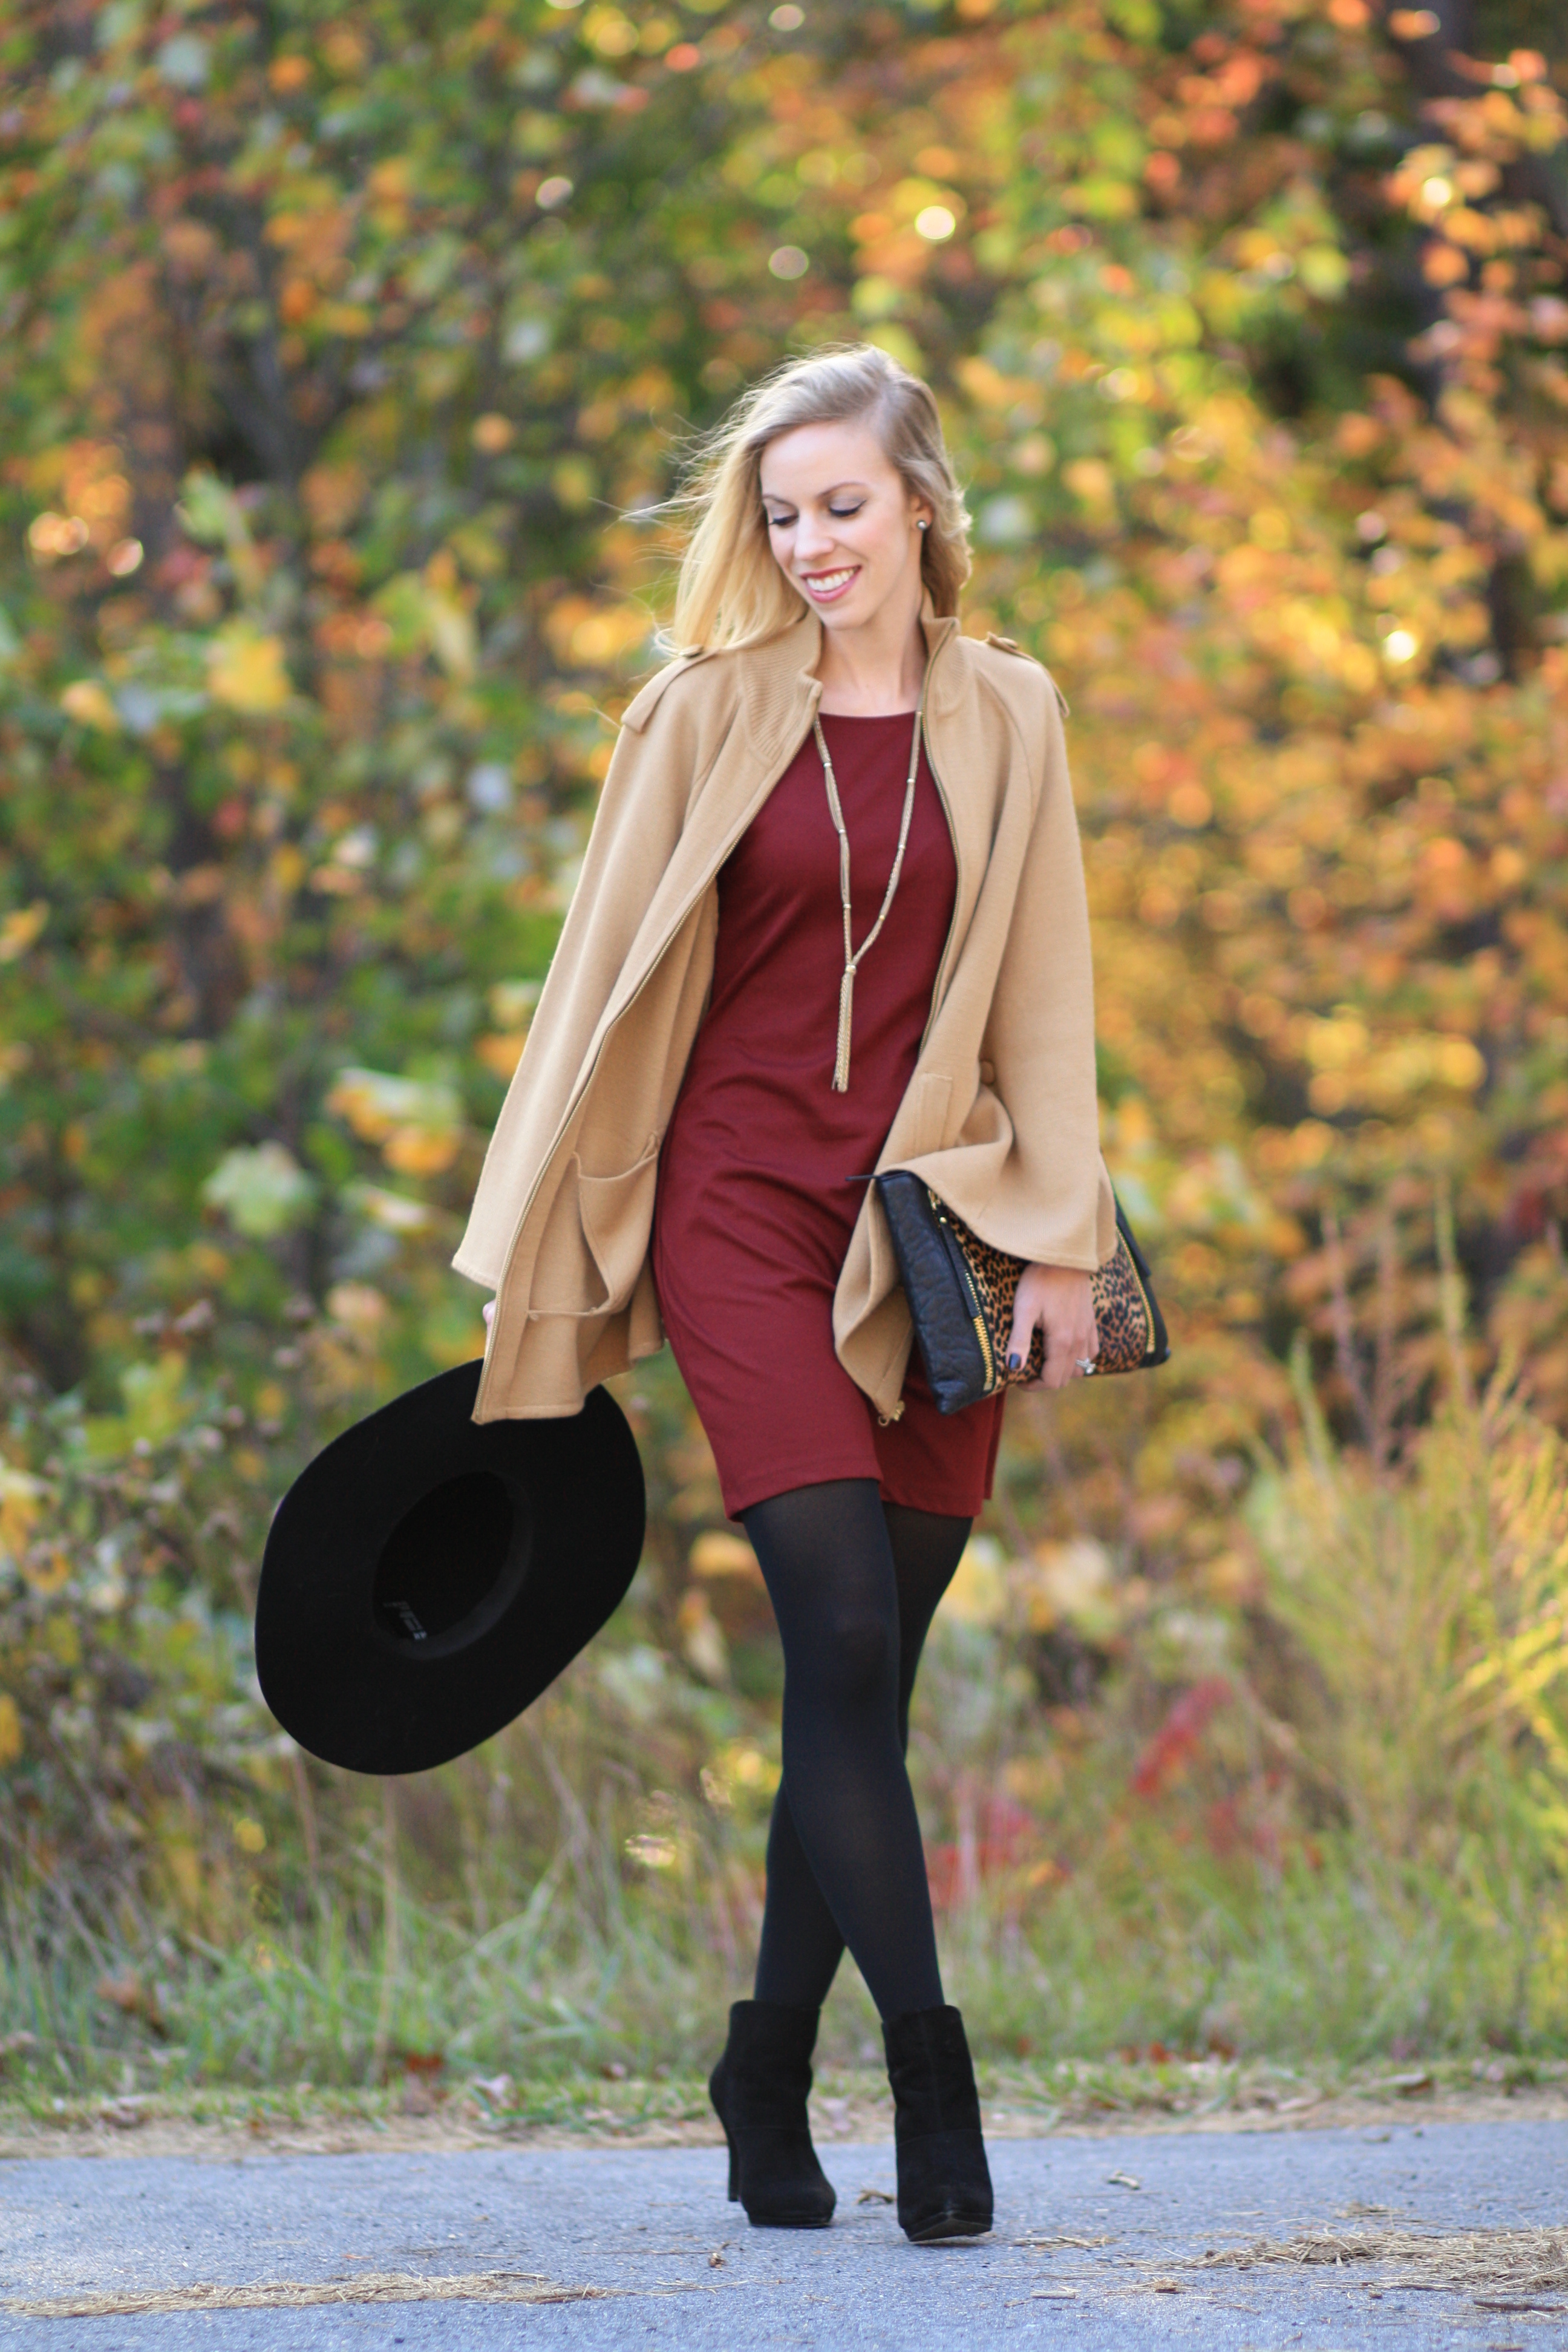 { Autumn Light: Camel cape, Burgundy shift dress & Leopard clutch